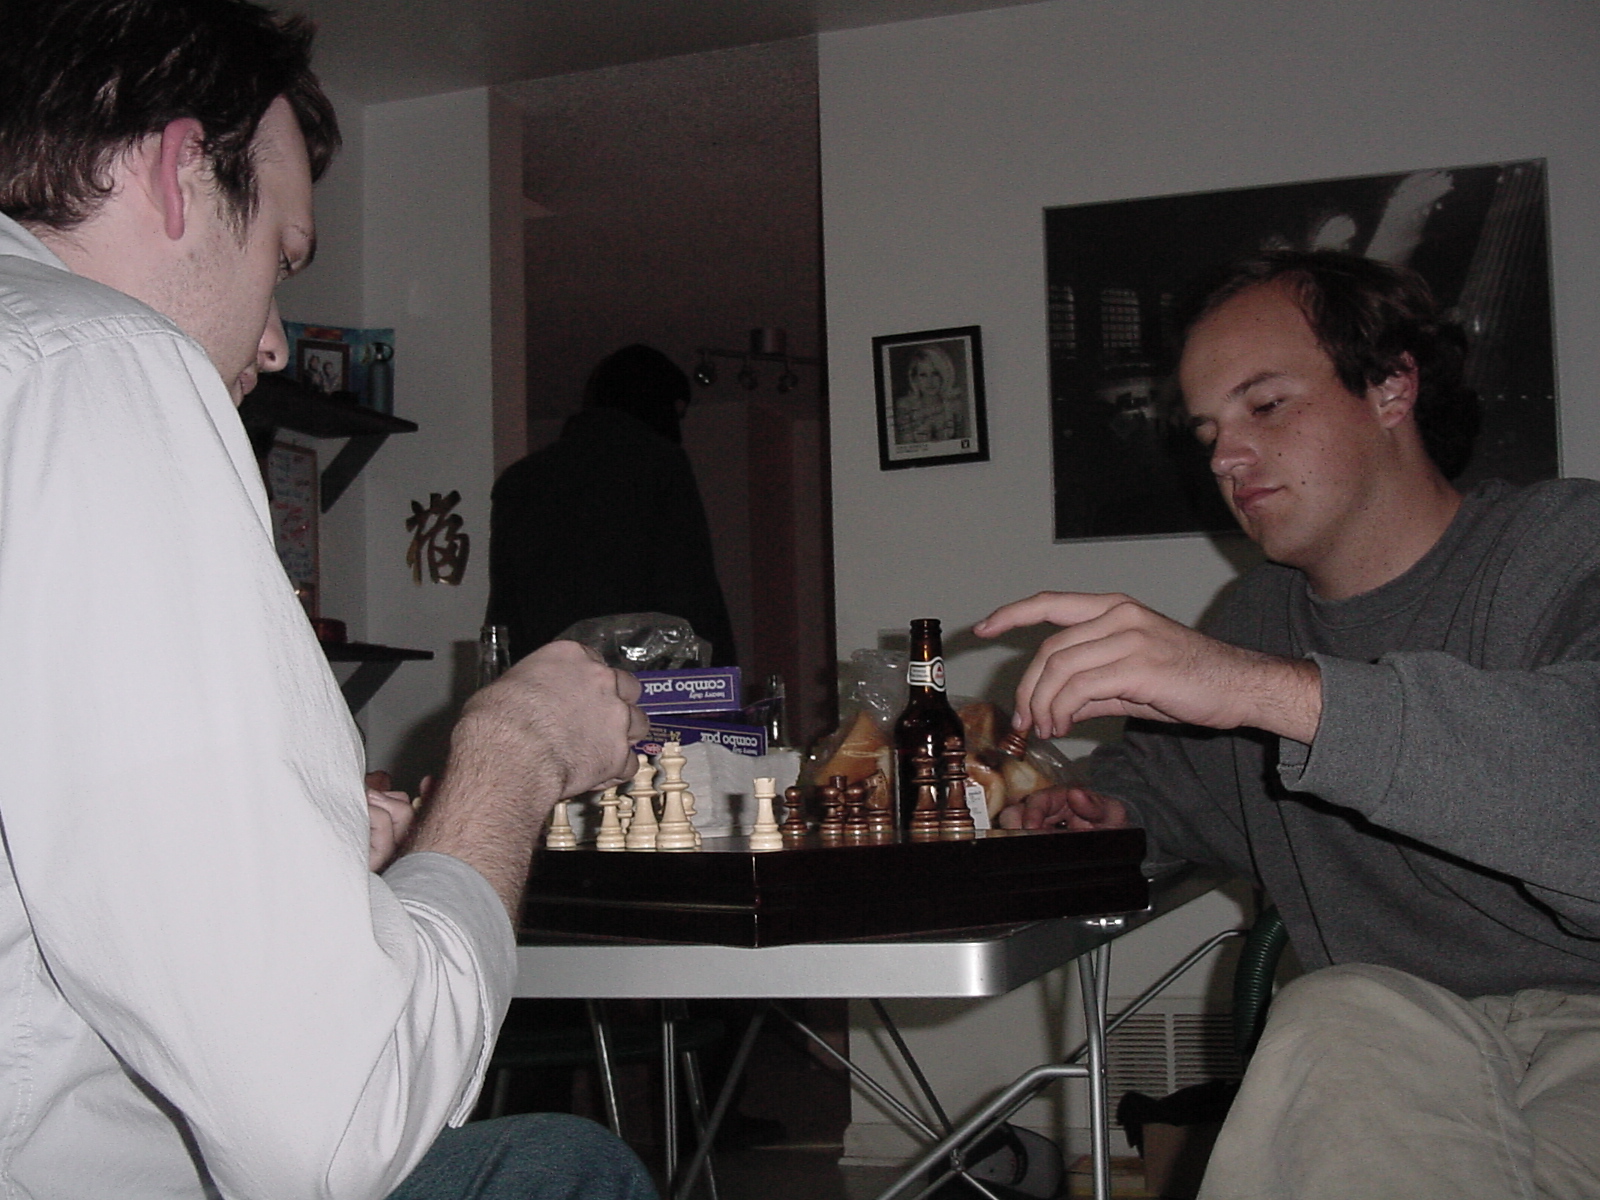 Chess01